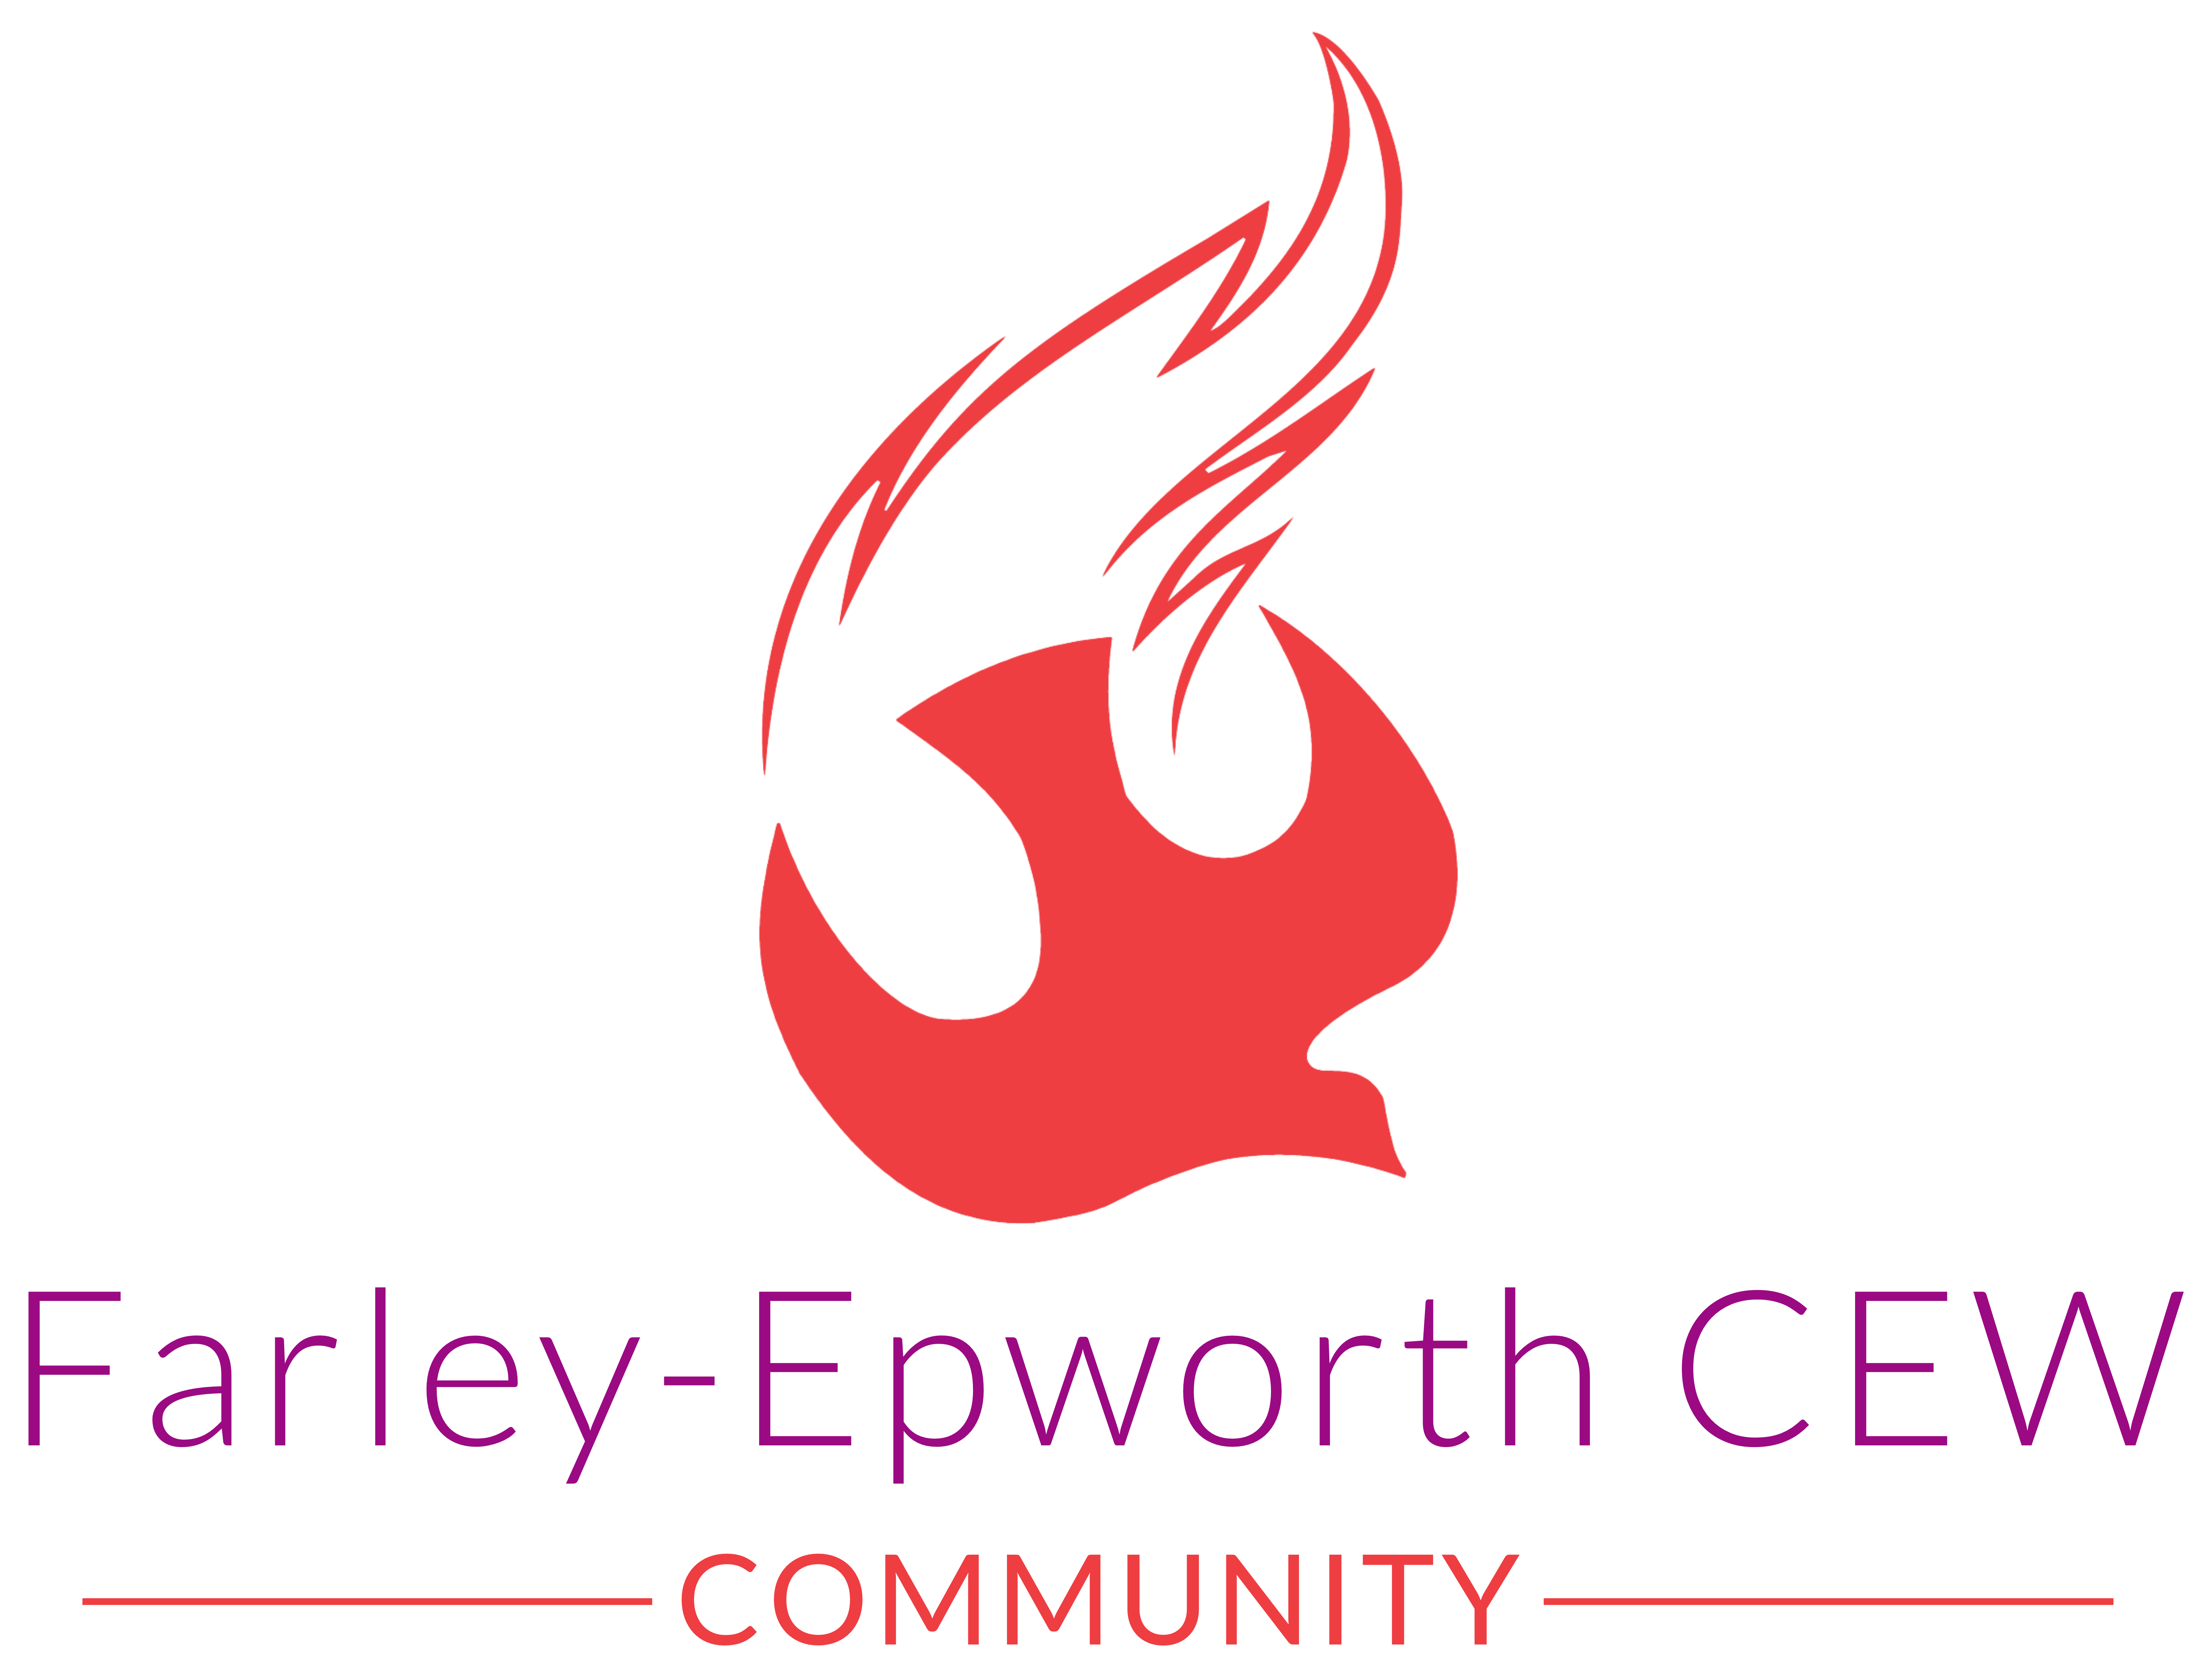 Farley Epworth CEW Logo